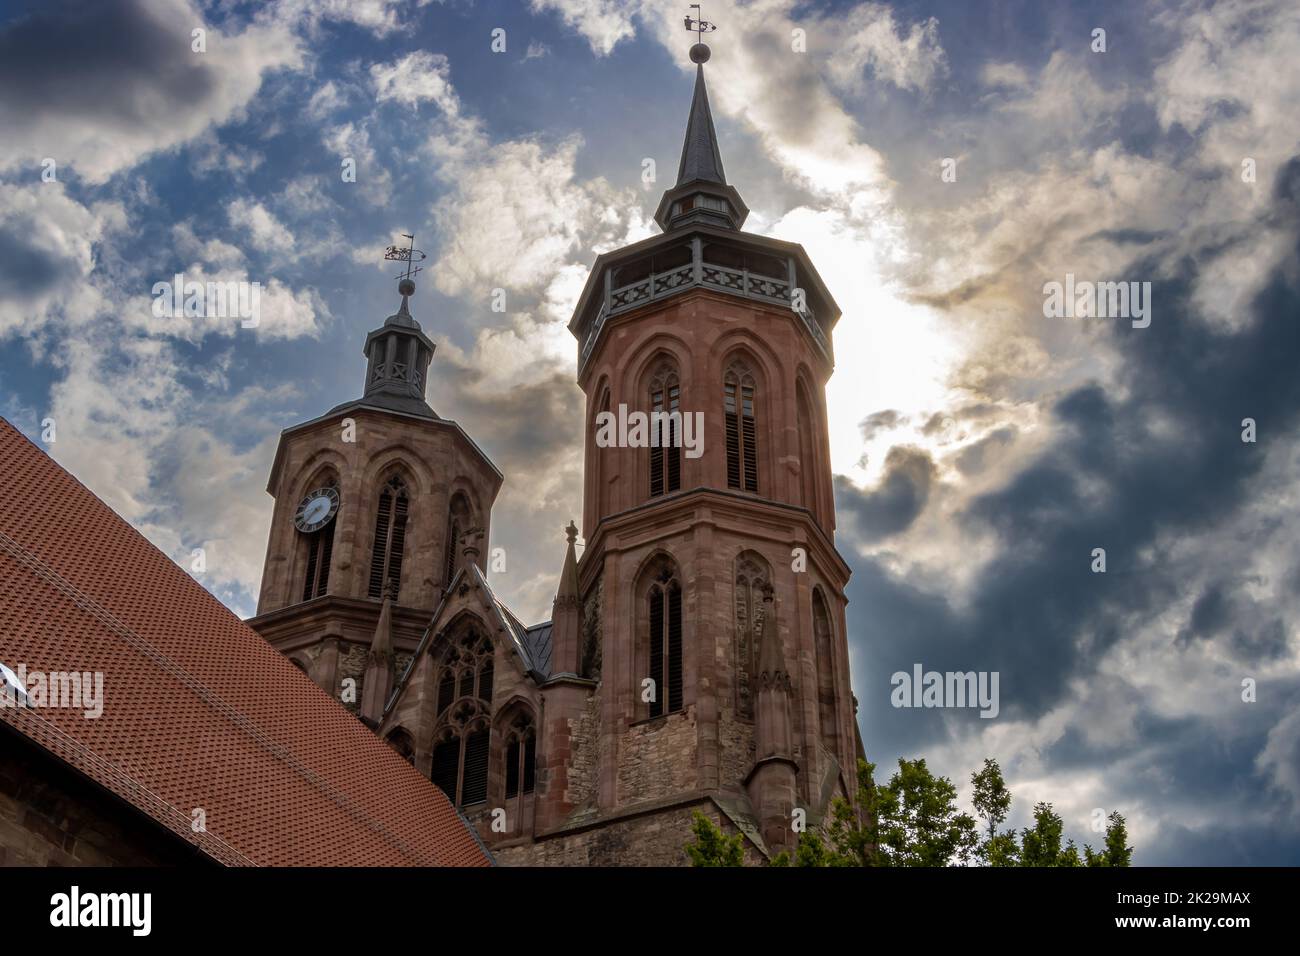 El St. La iglesia de Johannis en el casco antiguo de GÃ¶ttingen en Baja Sajonia es una iglesia gótica de tres naves del siglo 14th. Con sus torres visibles desde lejos, es uno de los puntos de referencia de la ciudad. Su patrón es Juan el Bautista. Foto de stock